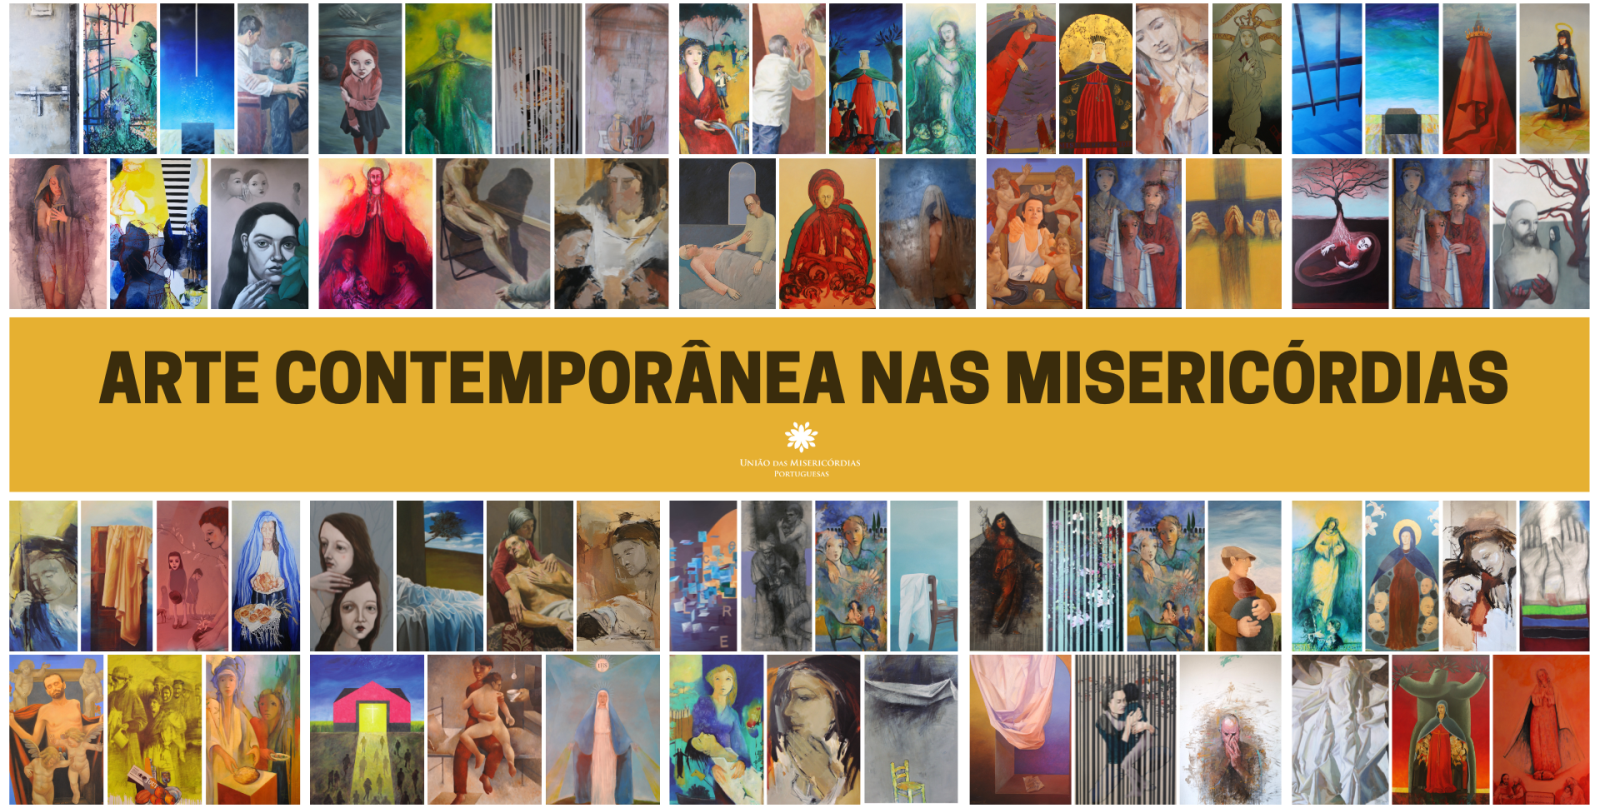 ‘Arte Contemporânea nas Misericórdias’ chega ao fim com 96 telas 